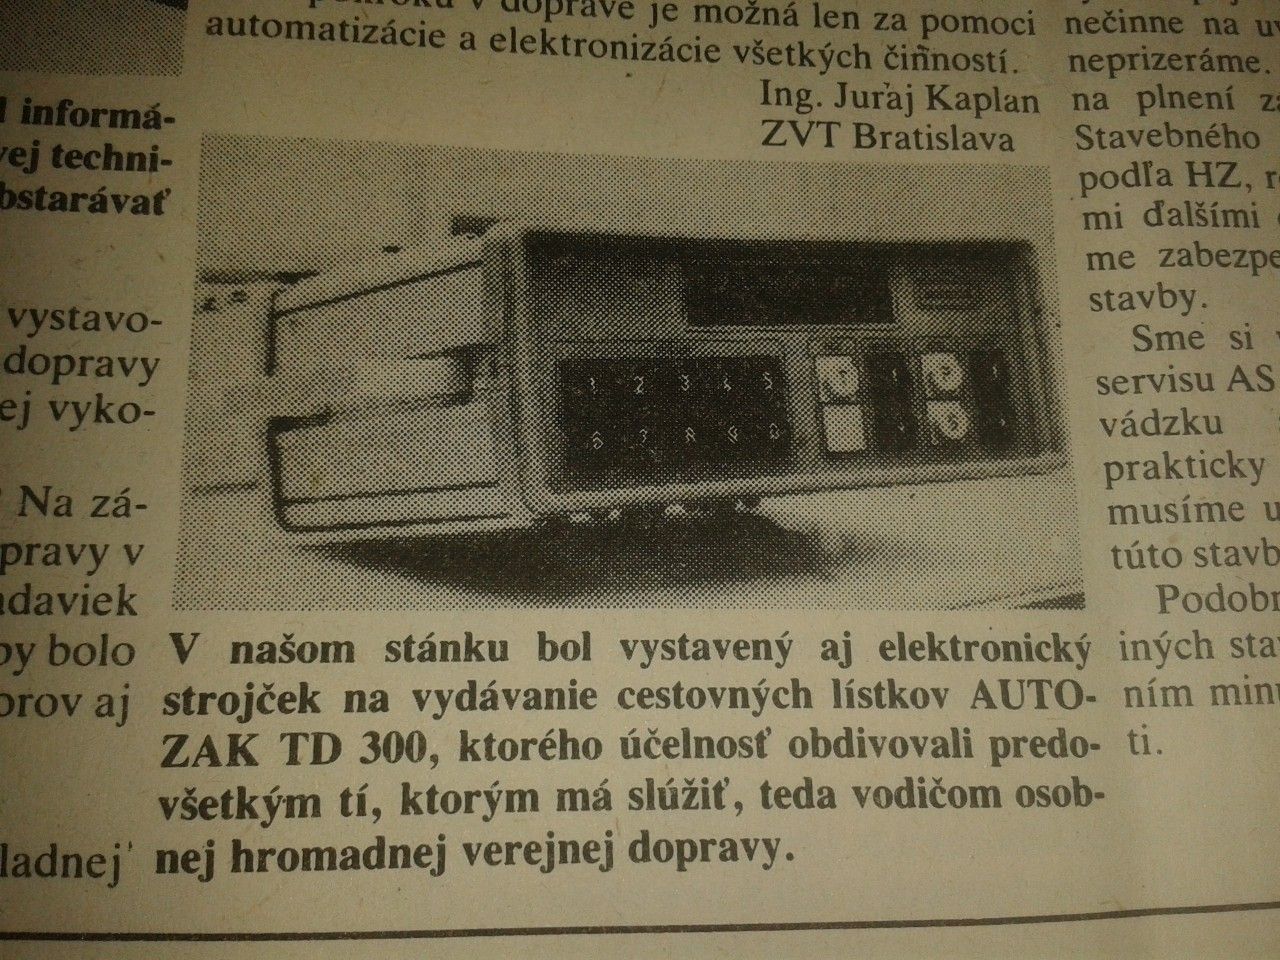 AUTOZAK TD 300